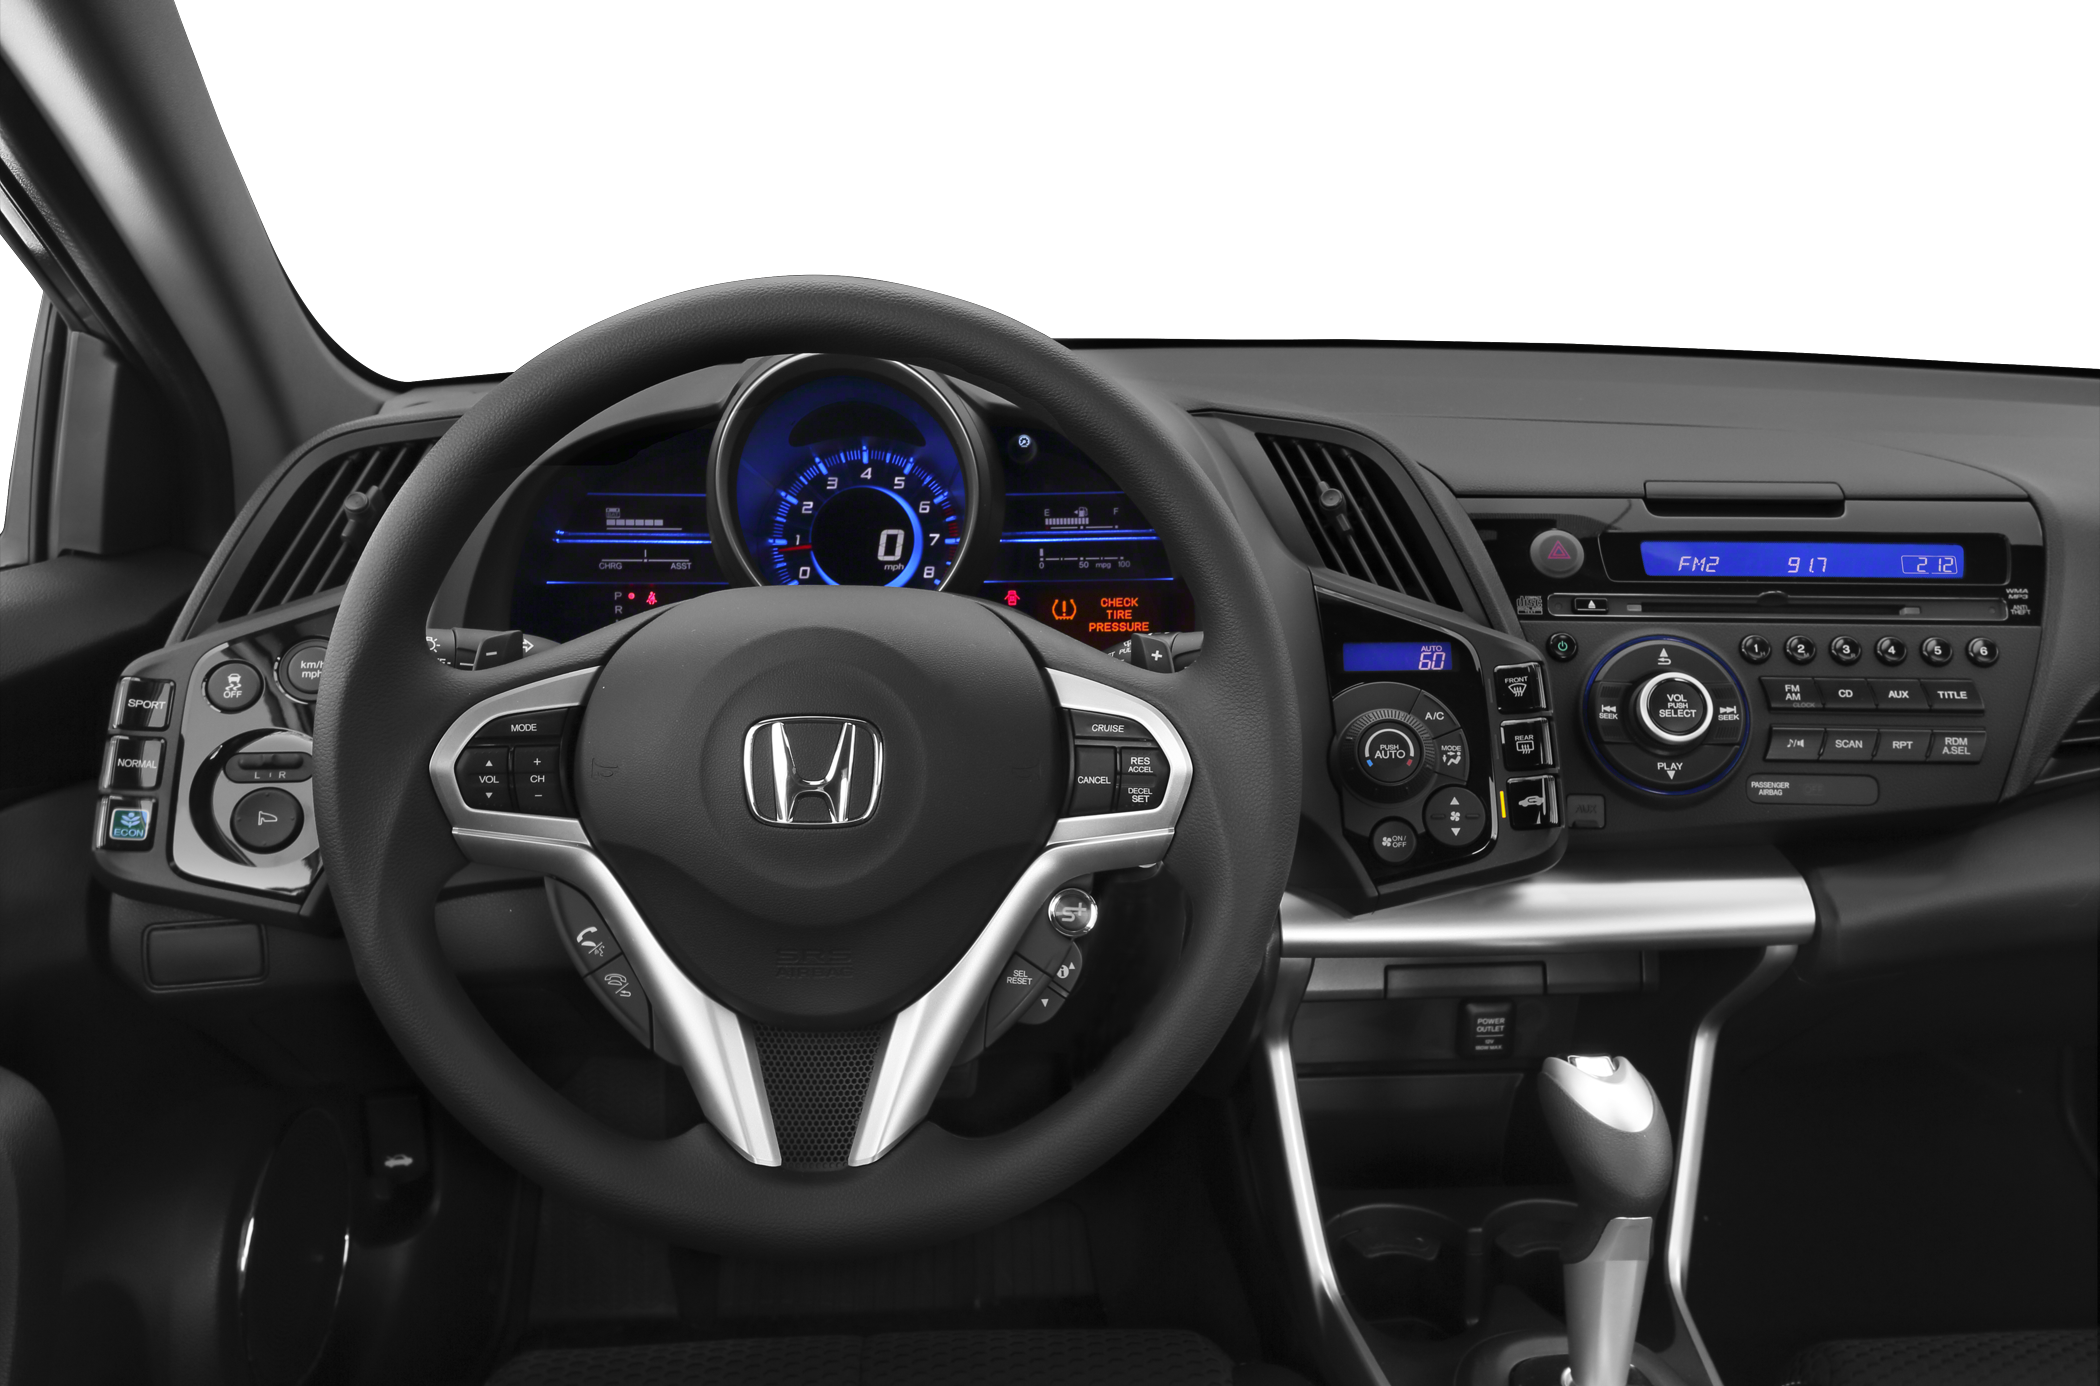 2013 Honda CR-Z Base 2dr Hatchback CVT - Research - GrooveCar